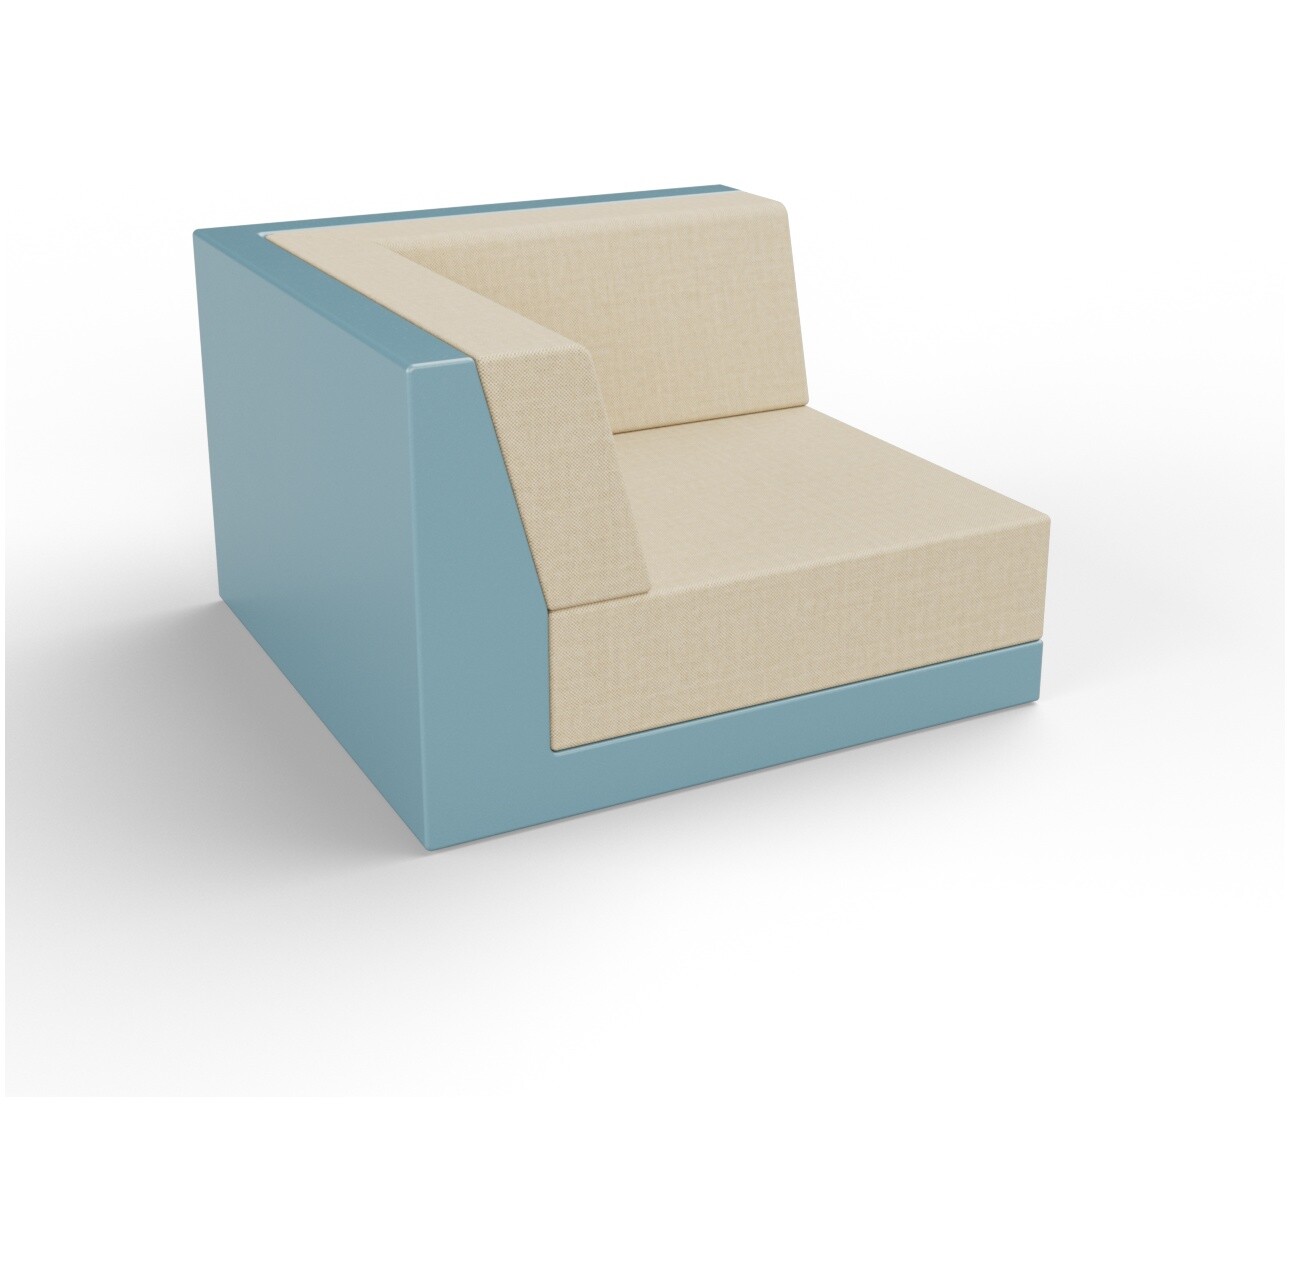 Модуль дивана угловой пластиковый с подушками бирюзовый, бежевый Quarter modular